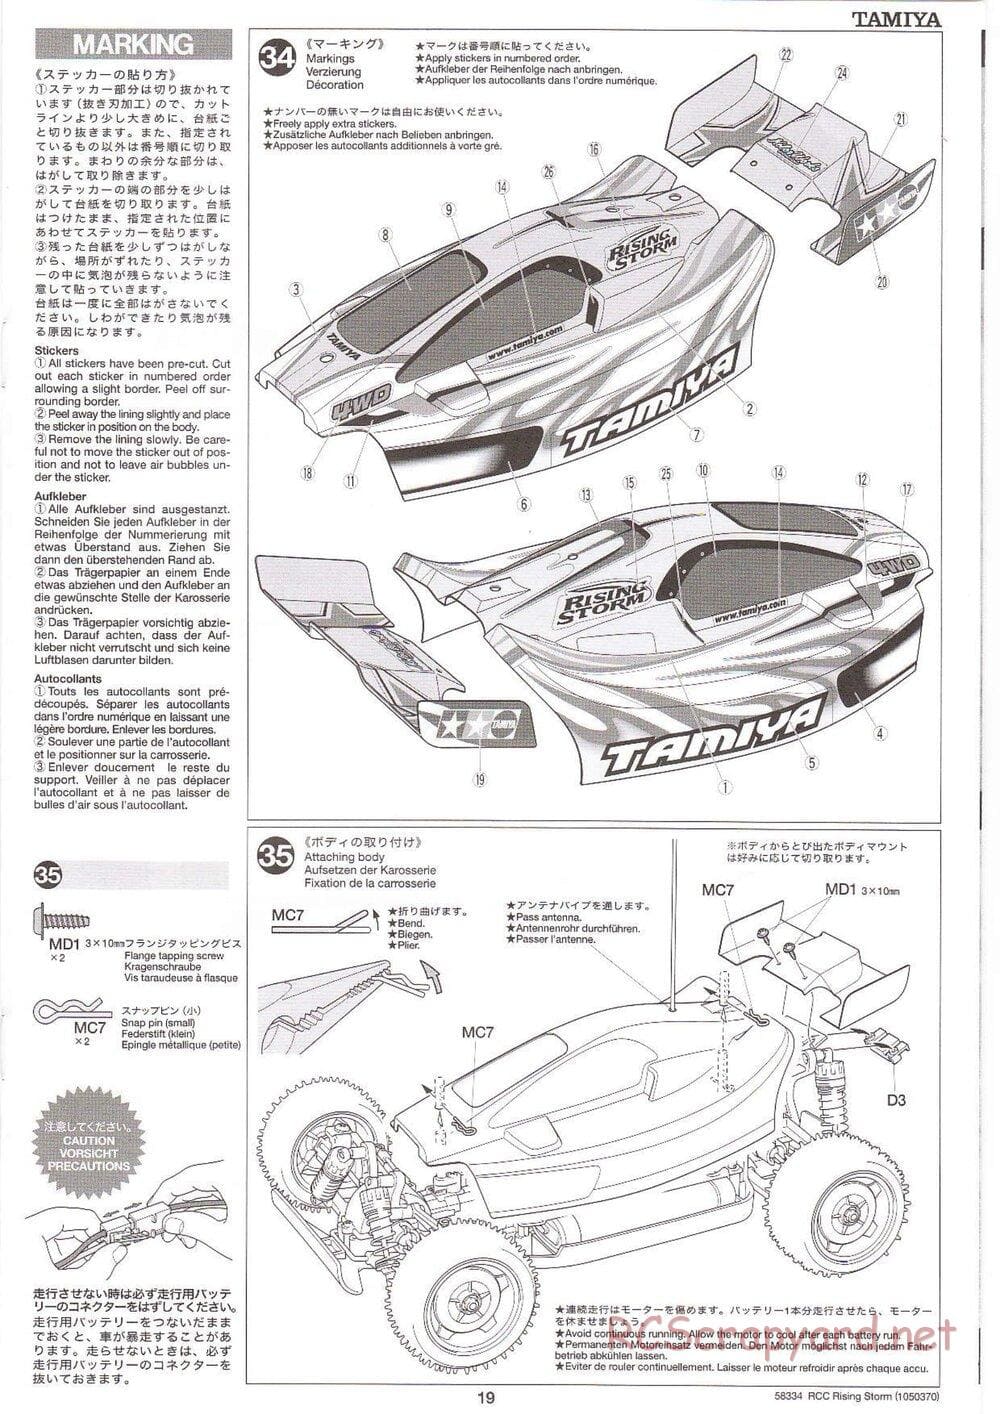 Tamiya - Rising Storm Chassis - Manual - Page 19